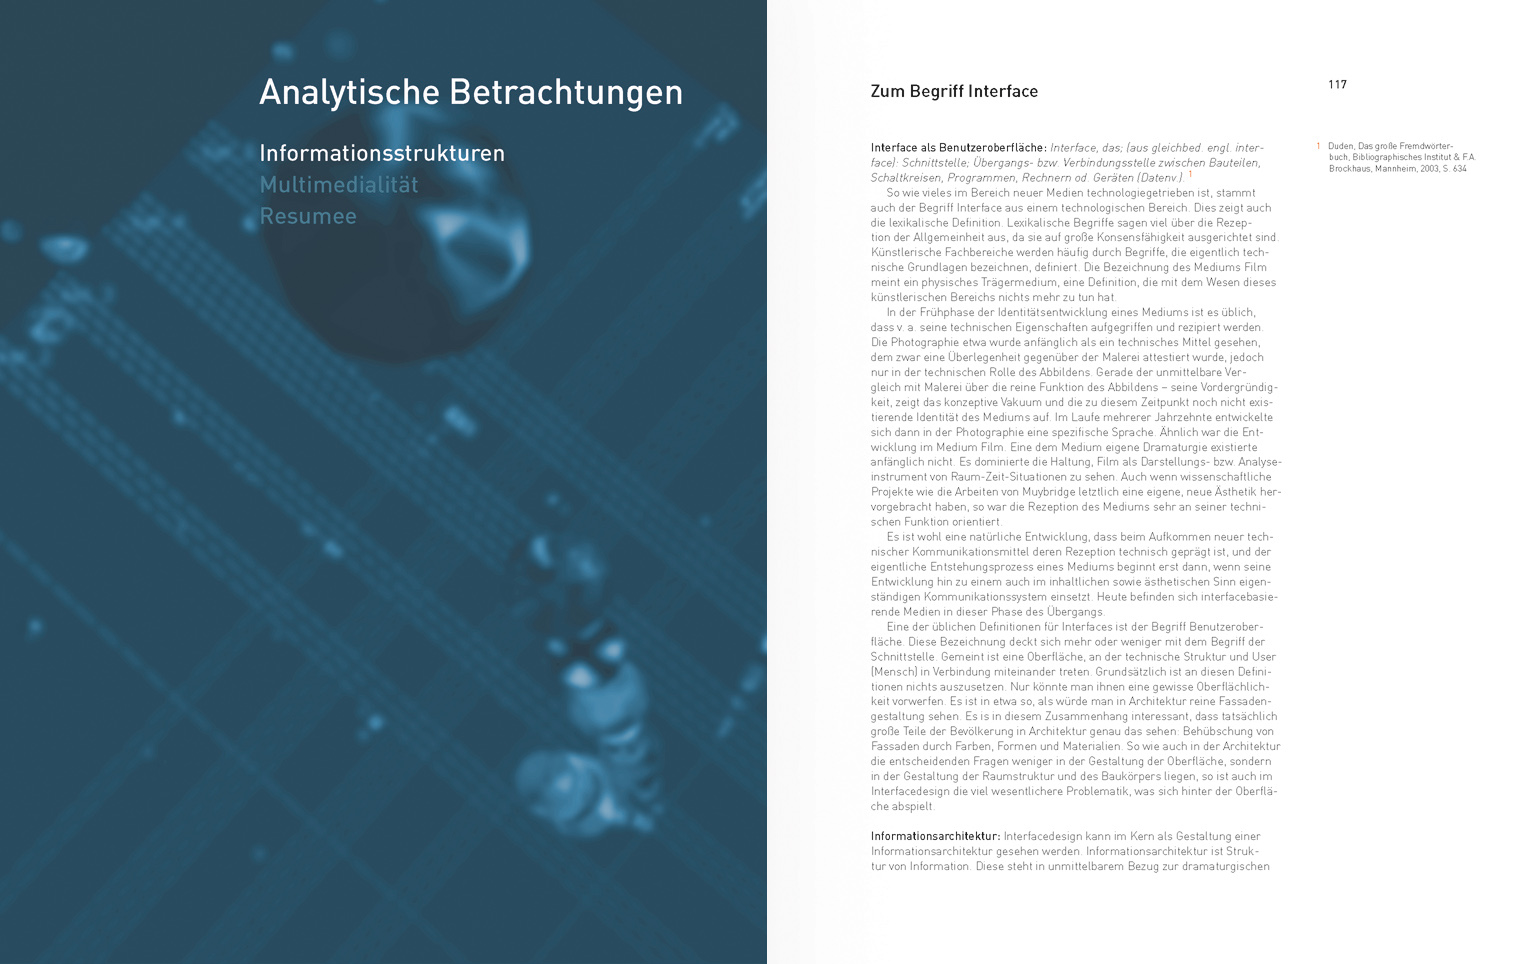 Buch "Science / Culture : Multimedia" – Titelseite Kapitel "Analytische Betrachtungen", Unterkapitel "Informationsstrukturen"